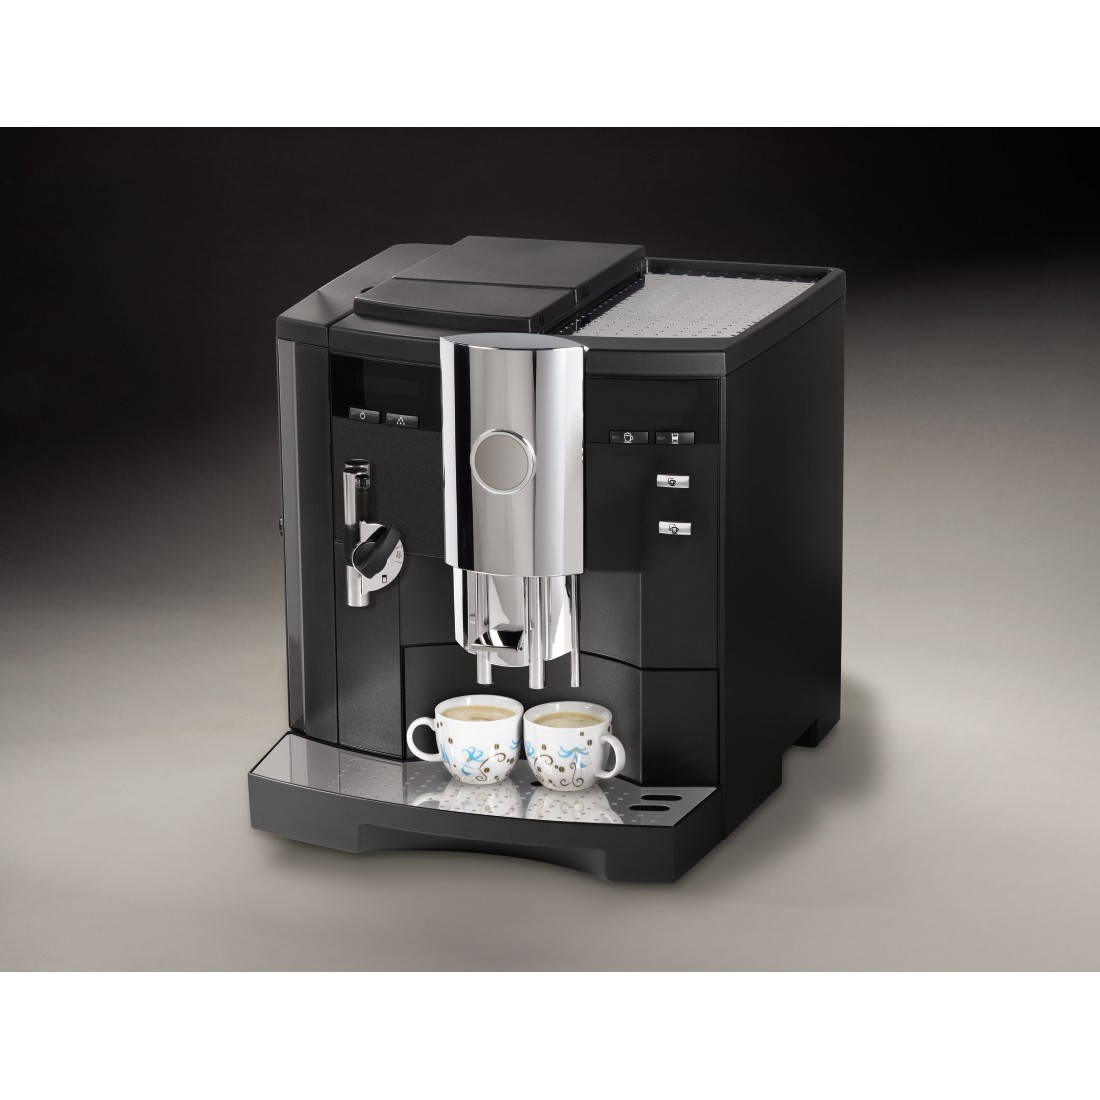 awx3 Druckfähige Anwendung 3 - Xavax, Entfetter-/Reinigungstabletten für Kaffeeautomaten, 10 Stück